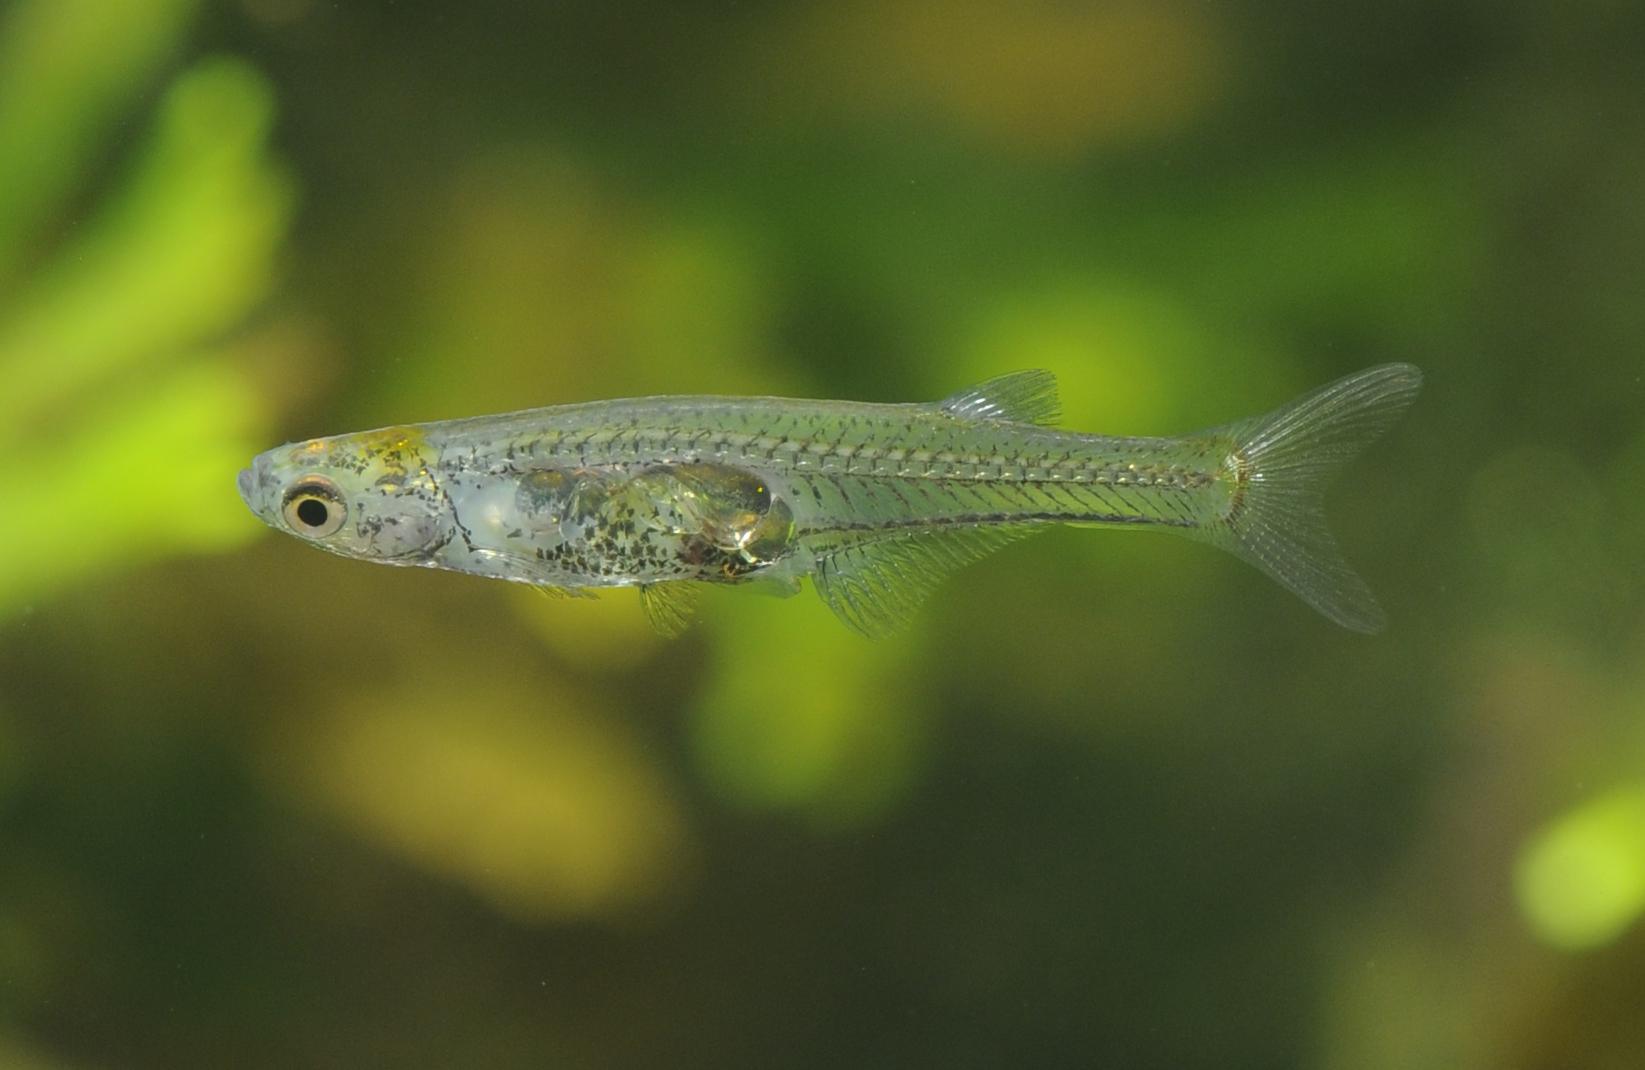 Danionella cerebrum: The fish and its visible brain